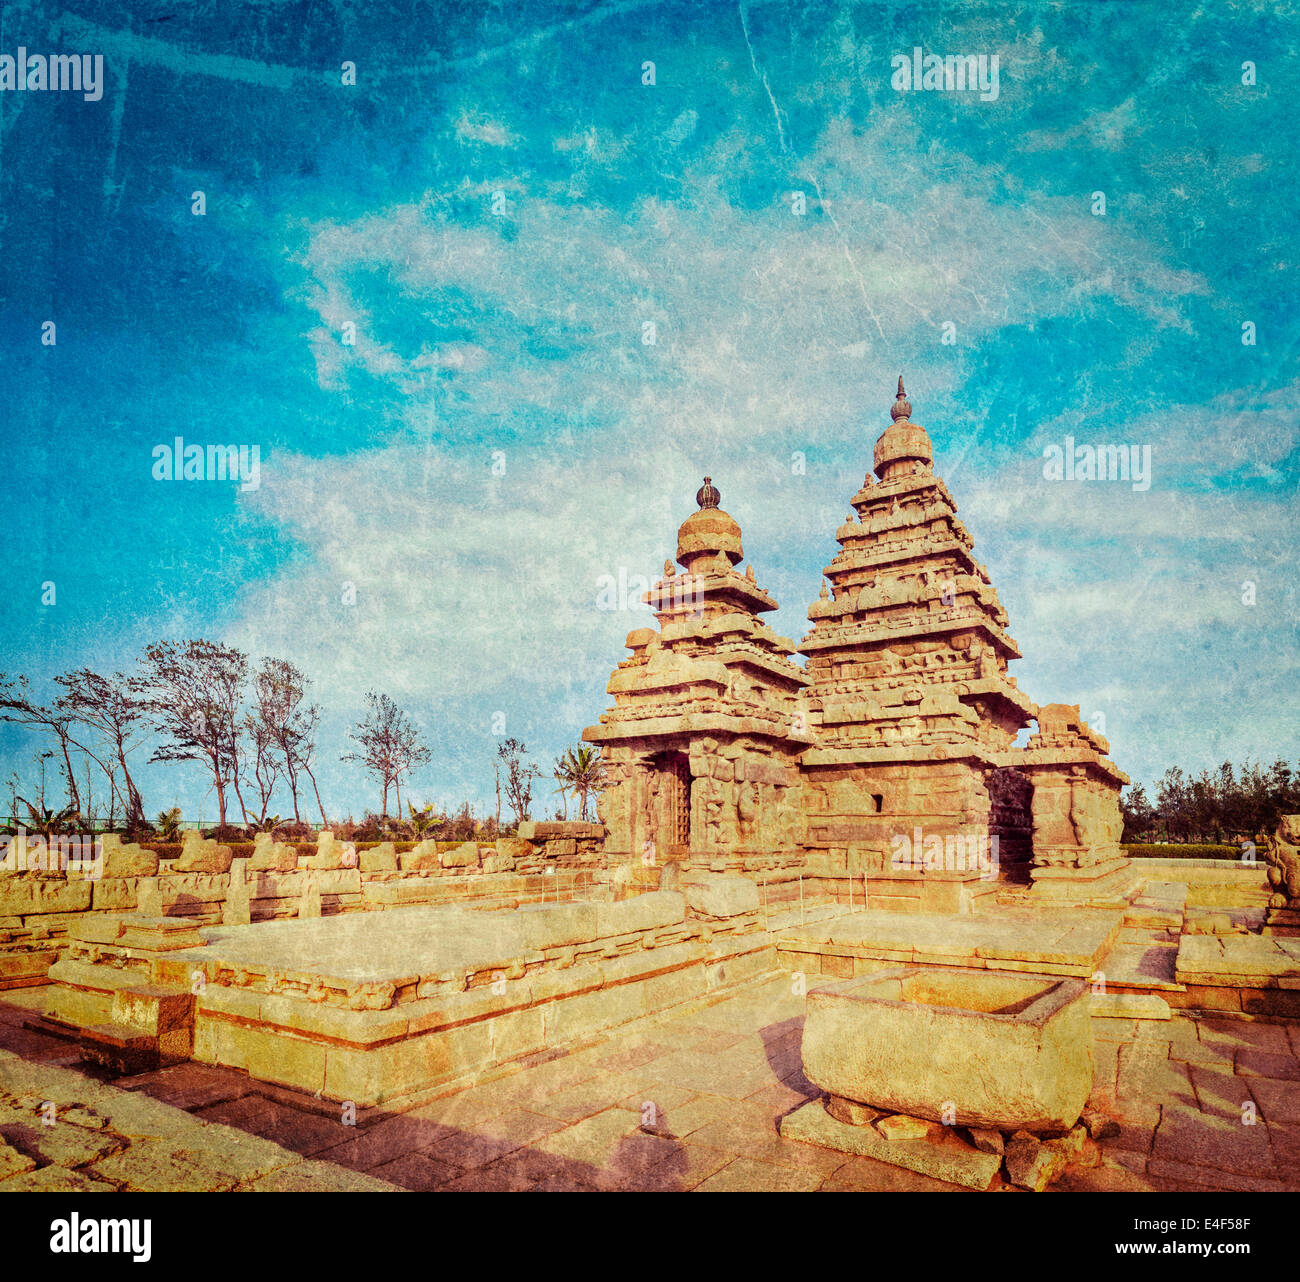 Vintage retrò hipster stile immagine di viaggio del famoso Tamil Nadu landmark - Tempio Shore, sito del patrimonio mondiale in Mahabalipuram Foto Stock